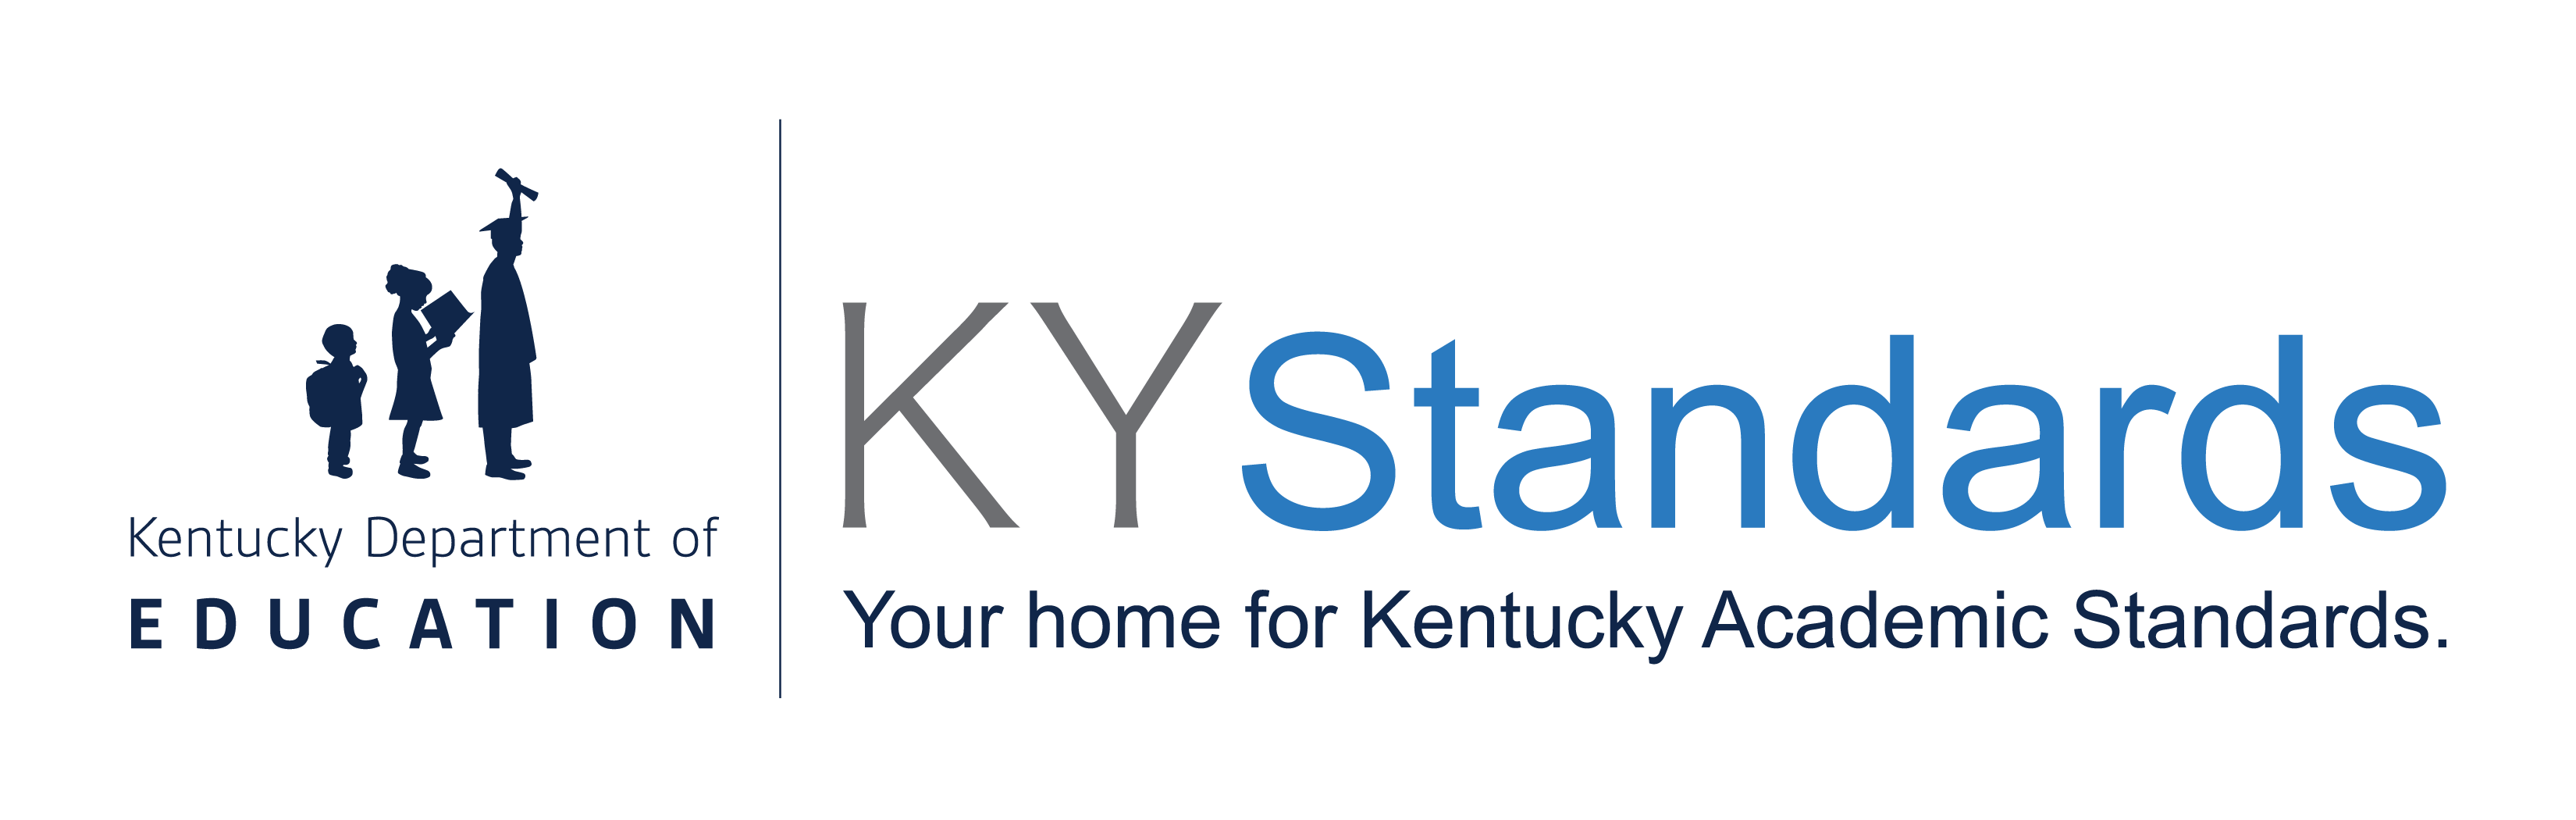 KYstandards logo